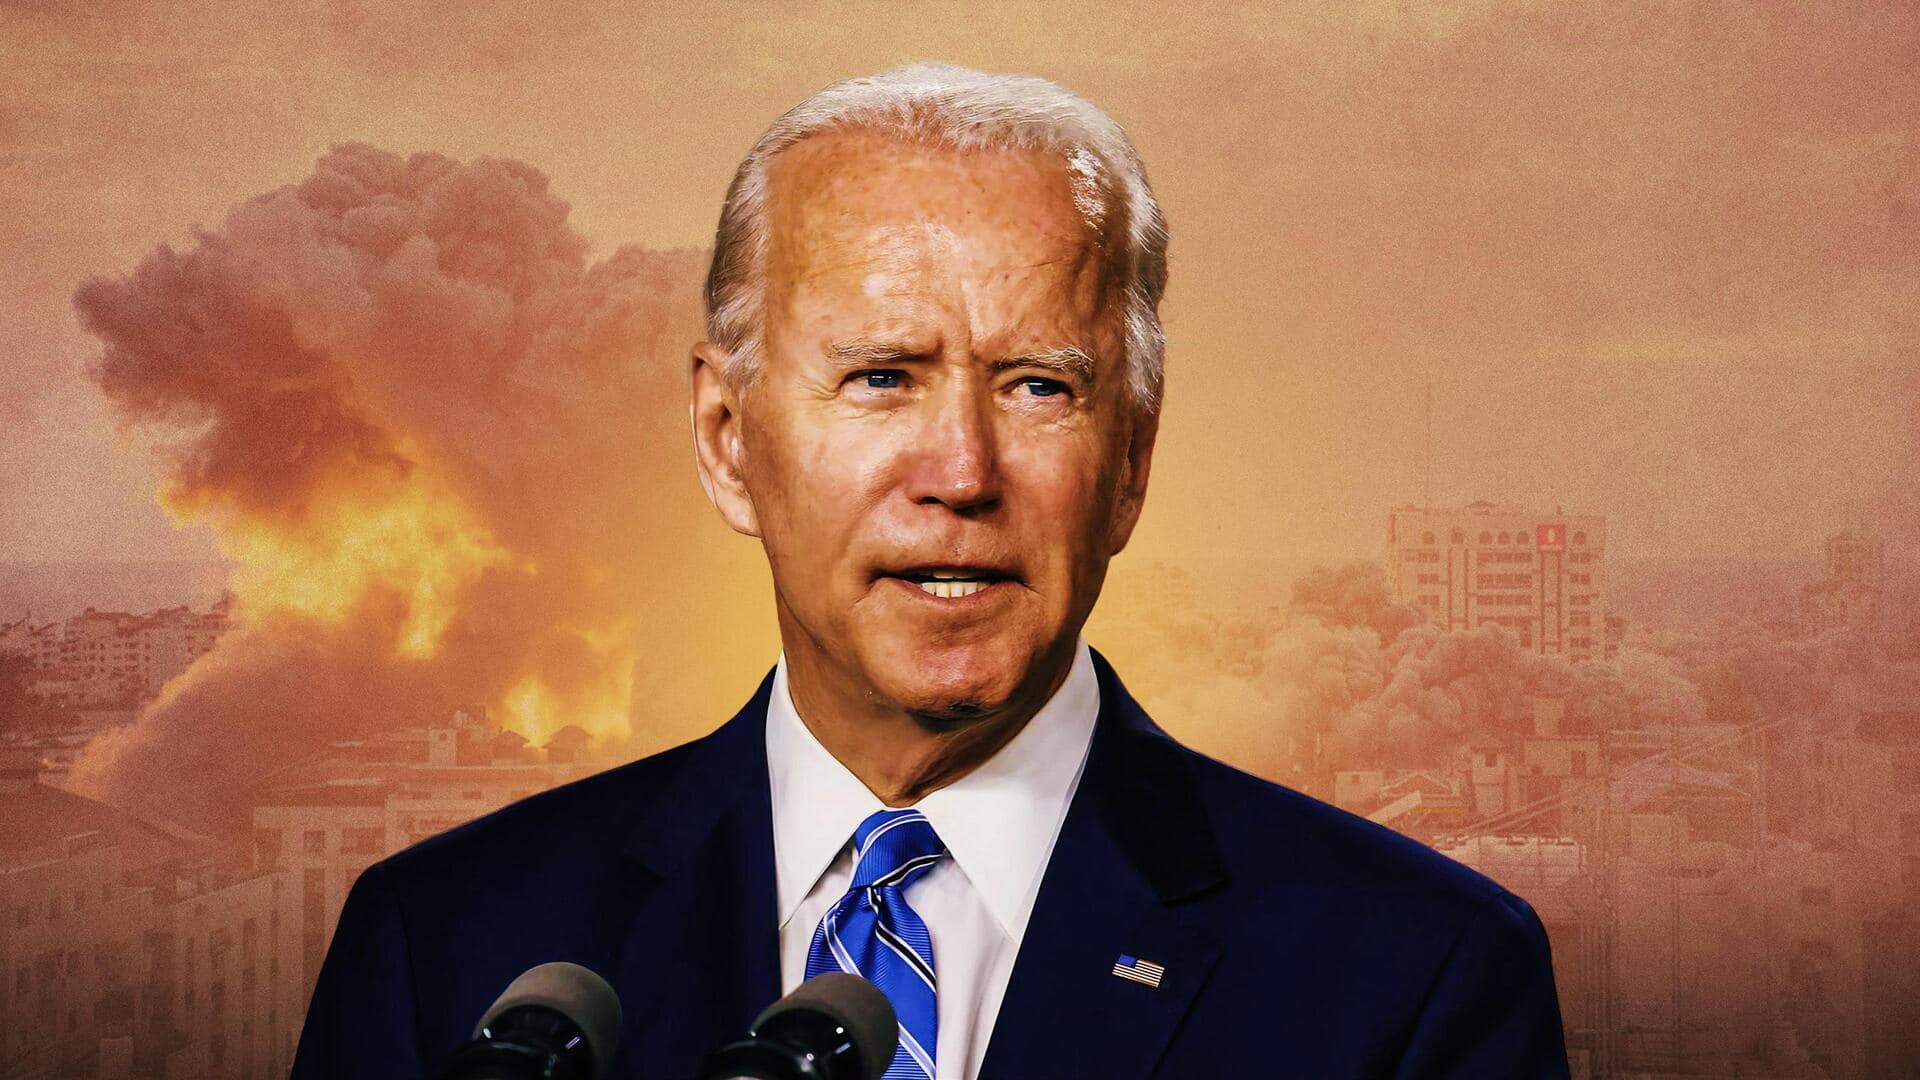 Israel-Hamas war: Biden alleges 'terrorists beheading children,' White House clarifies